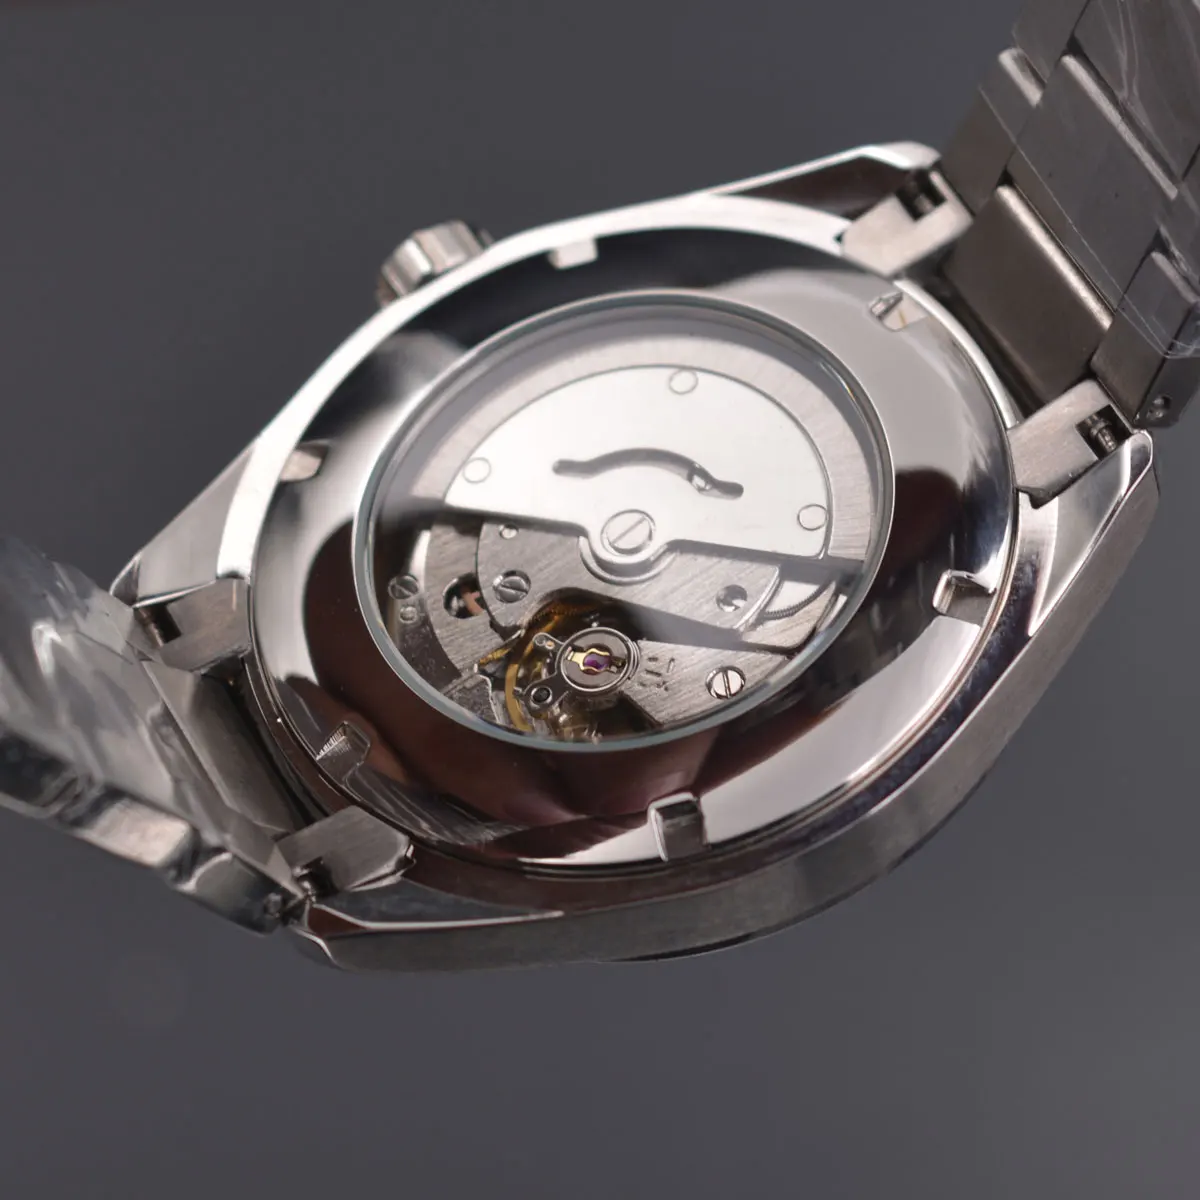 41 мм Corgeut сапфировое стекло светящиеся механические Автоматические Мужские часы синий циферблат нержавеющая сталь браслет часы